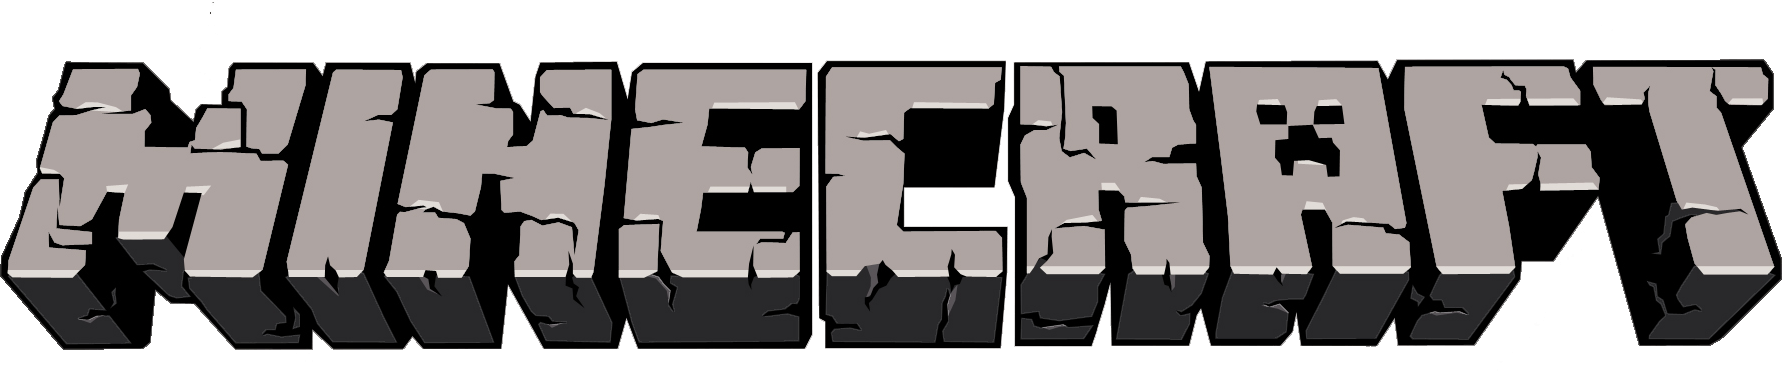 Minecraft HD logo by NuryRush